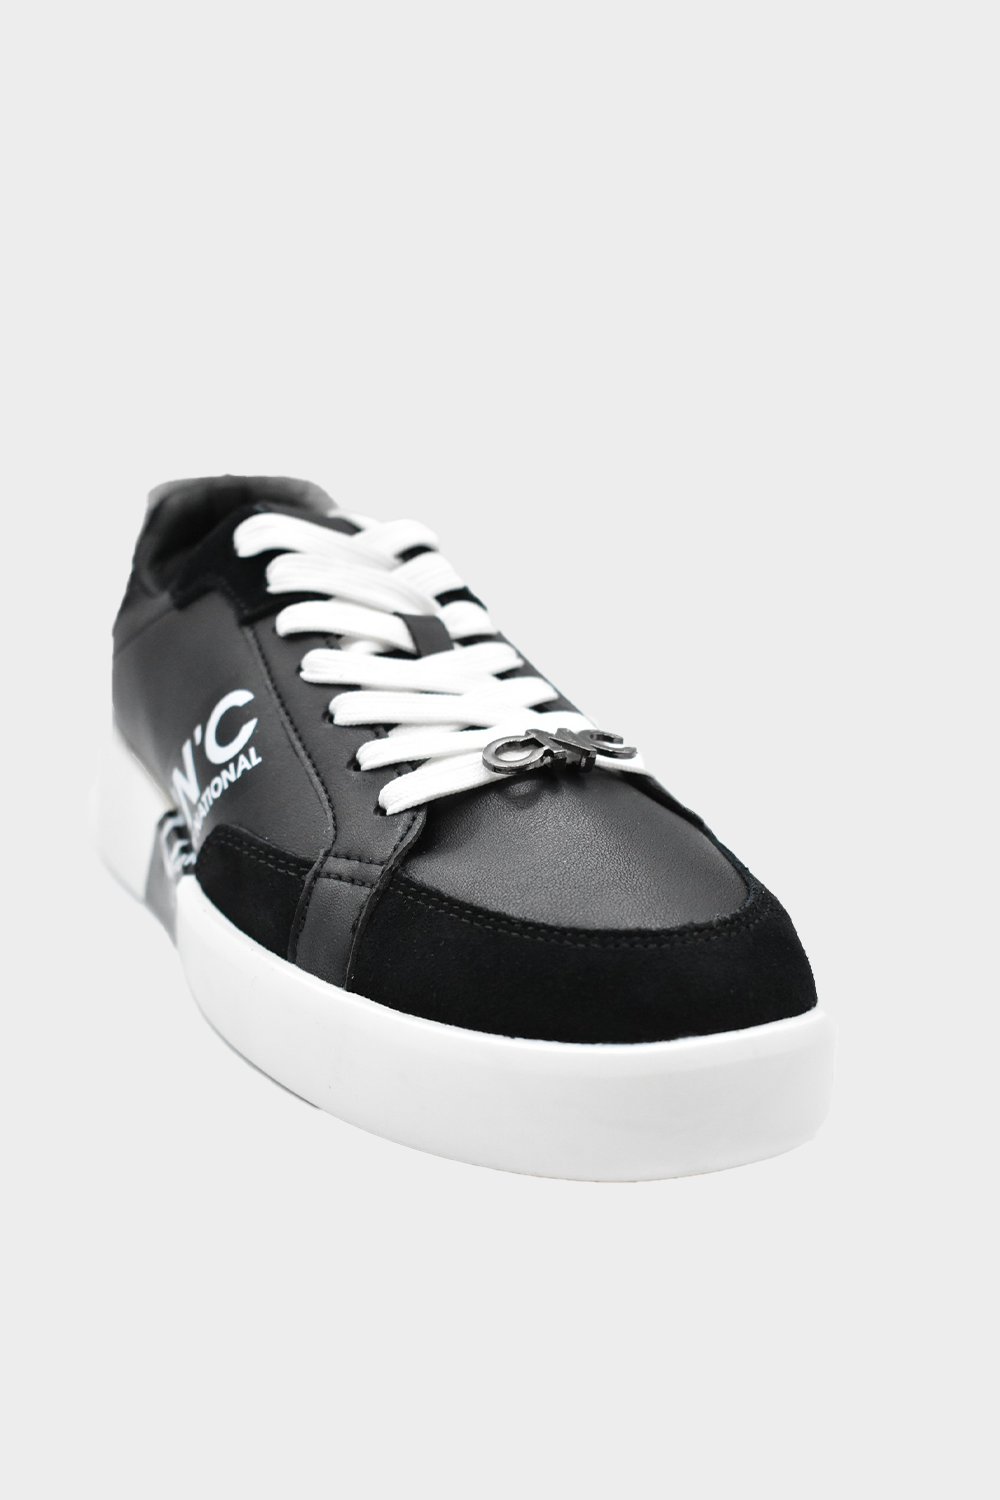 נעלי סניקרס לגברים בצבע שחור